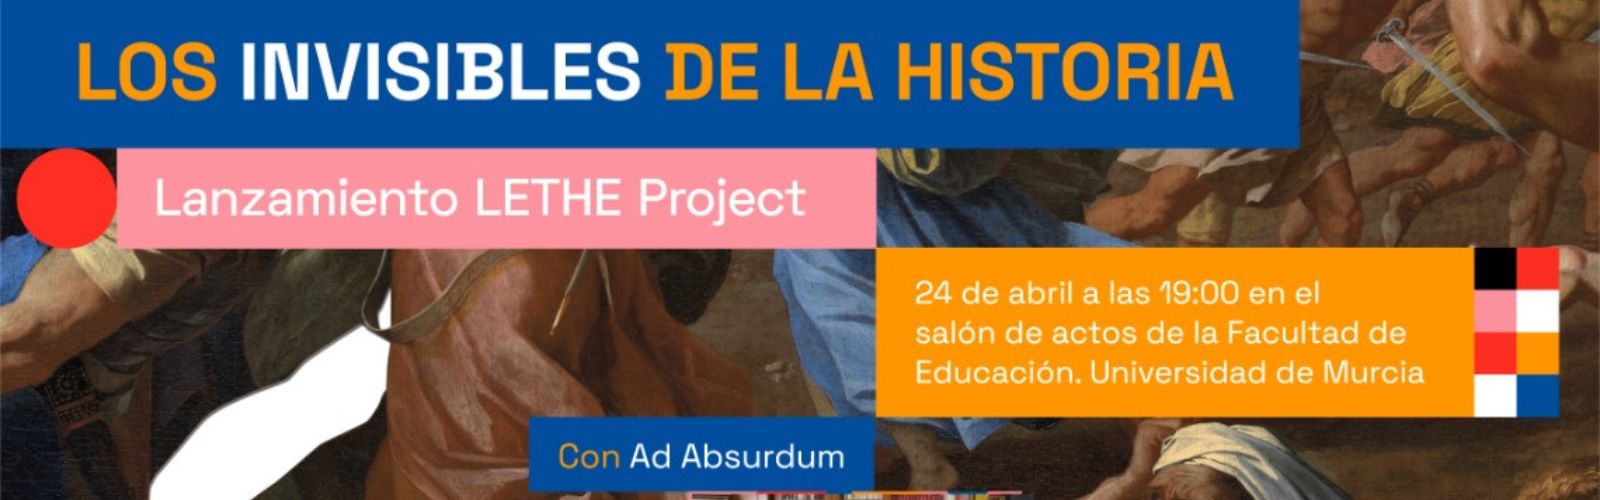 Los colectivos olvidados de la historia salen a la luz en el proyecto europeo LETHE liderado por investigadores de la Facultad de Educación